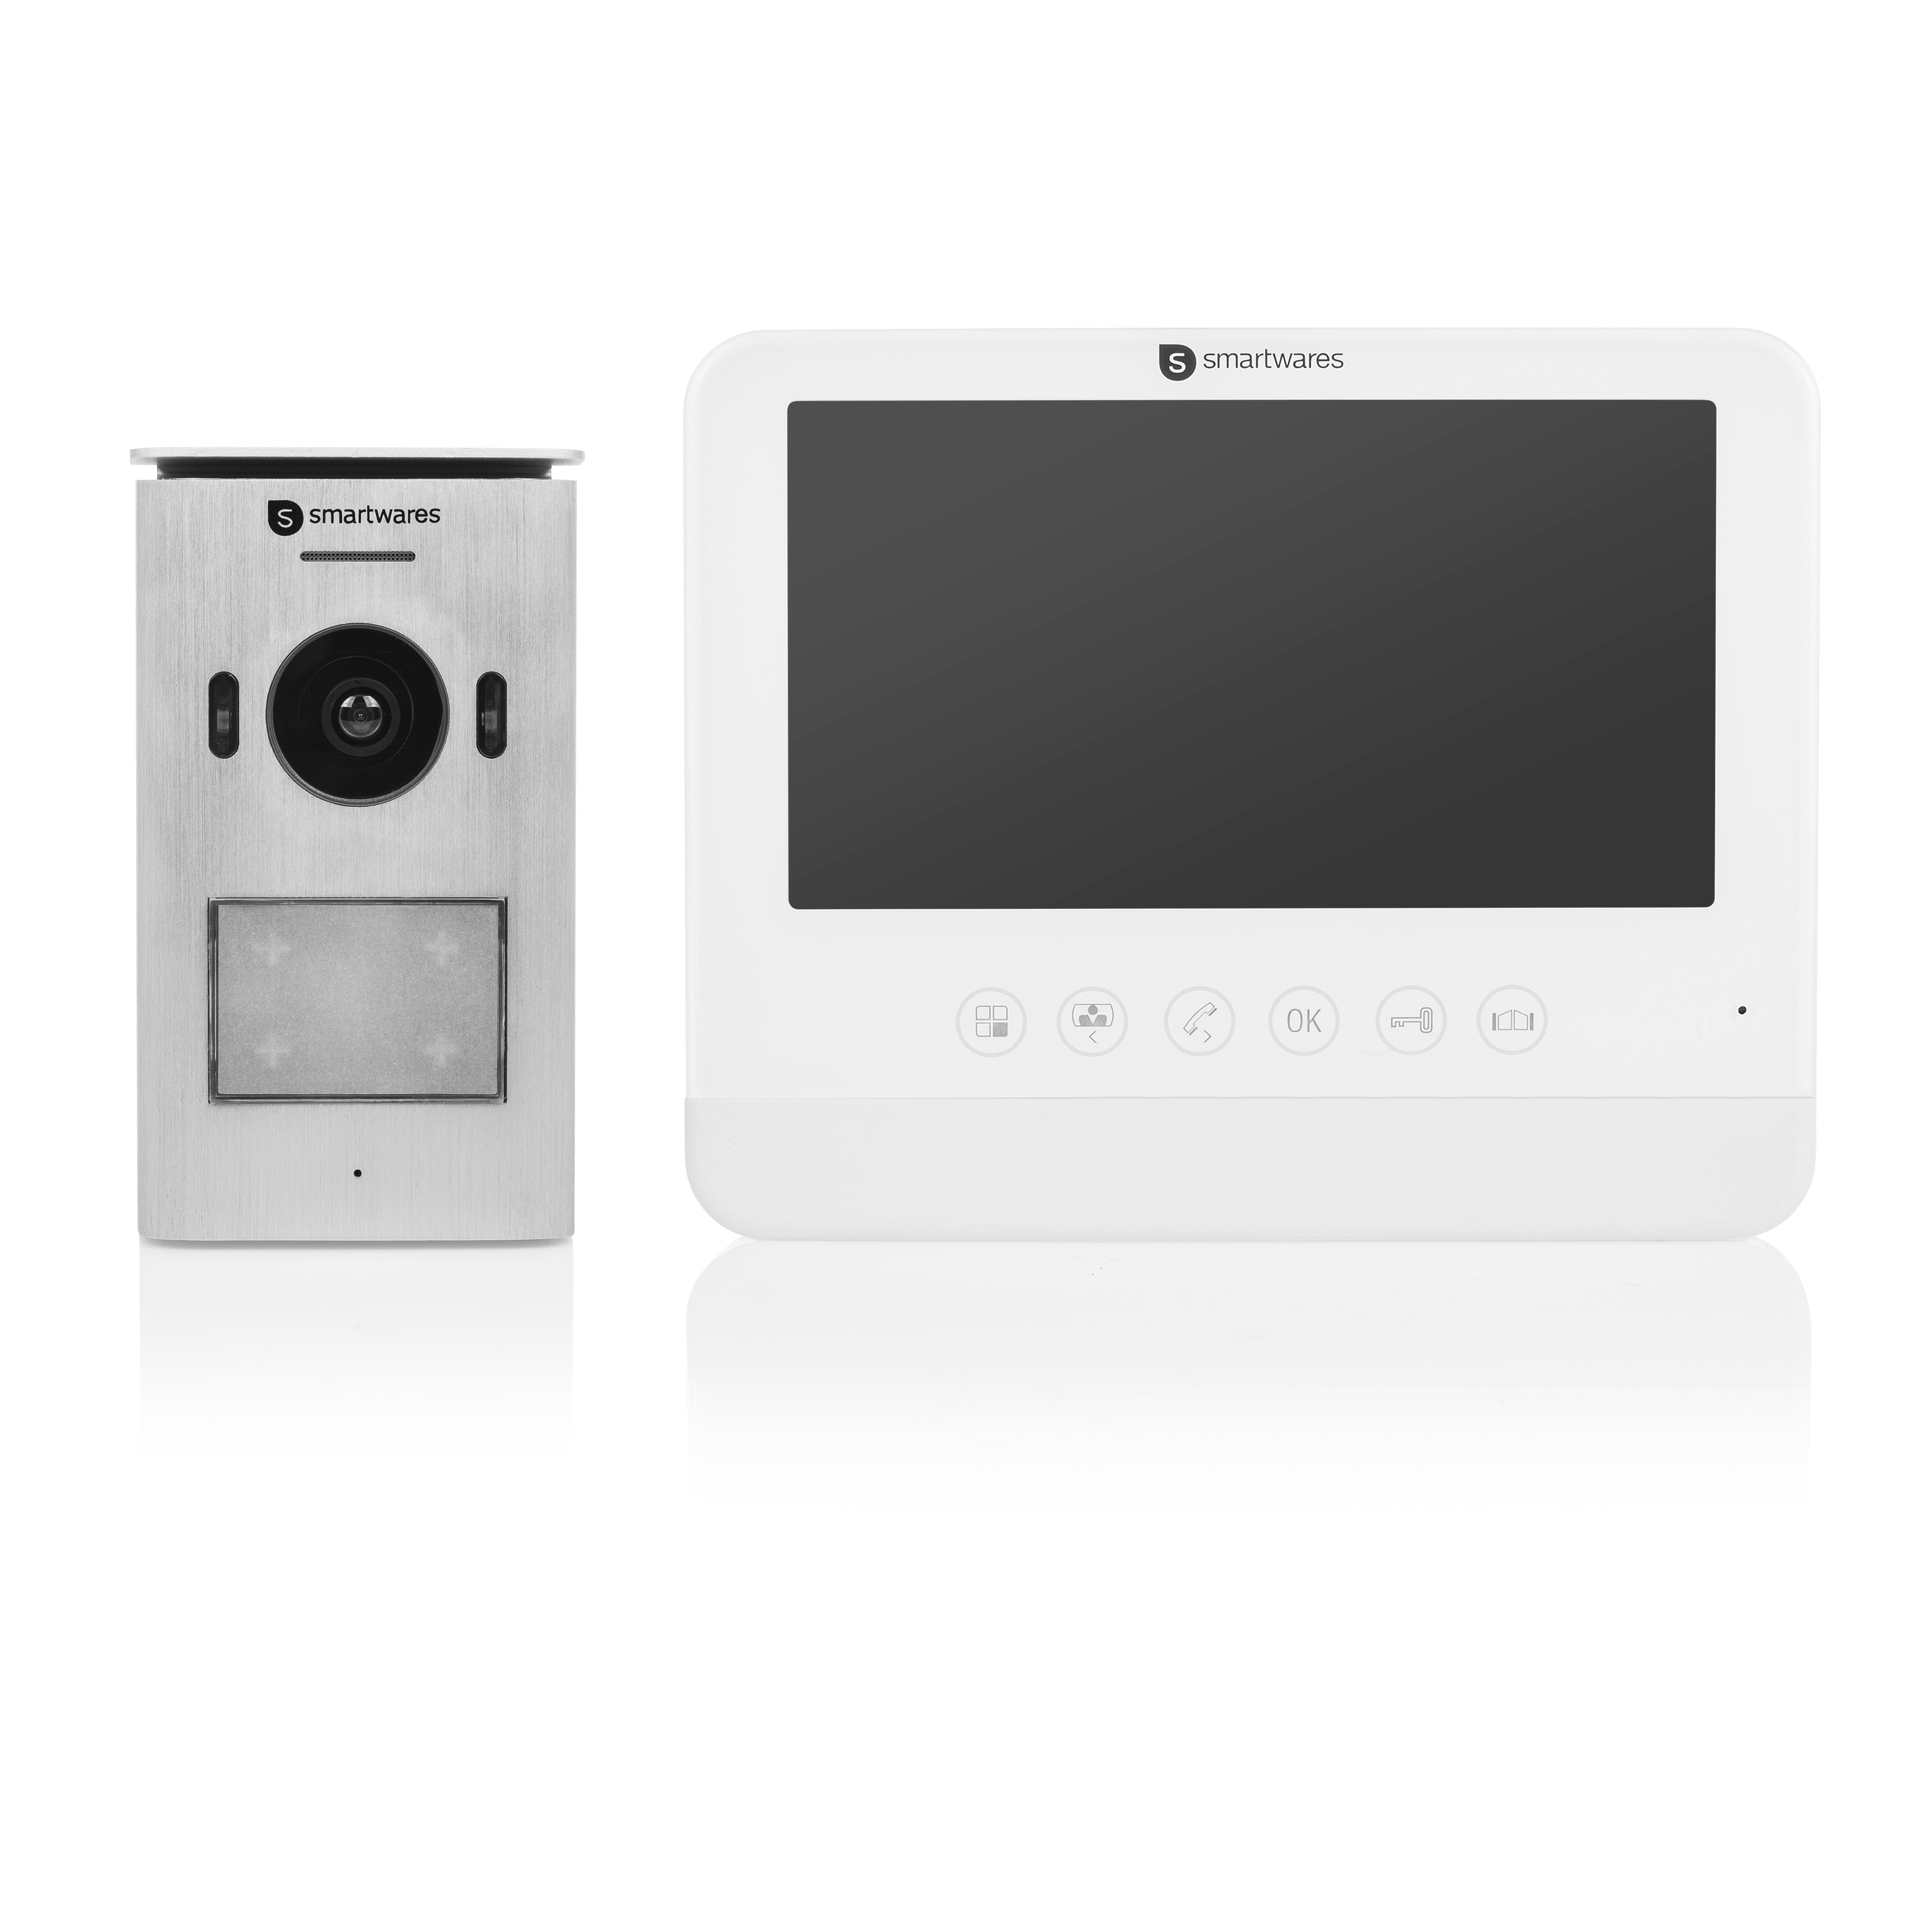 Smartwares DIC-22212 Video intercom systeem voor 1 appartement wit, aluminium deurbel/intercom kopen? | | helpt kiezen